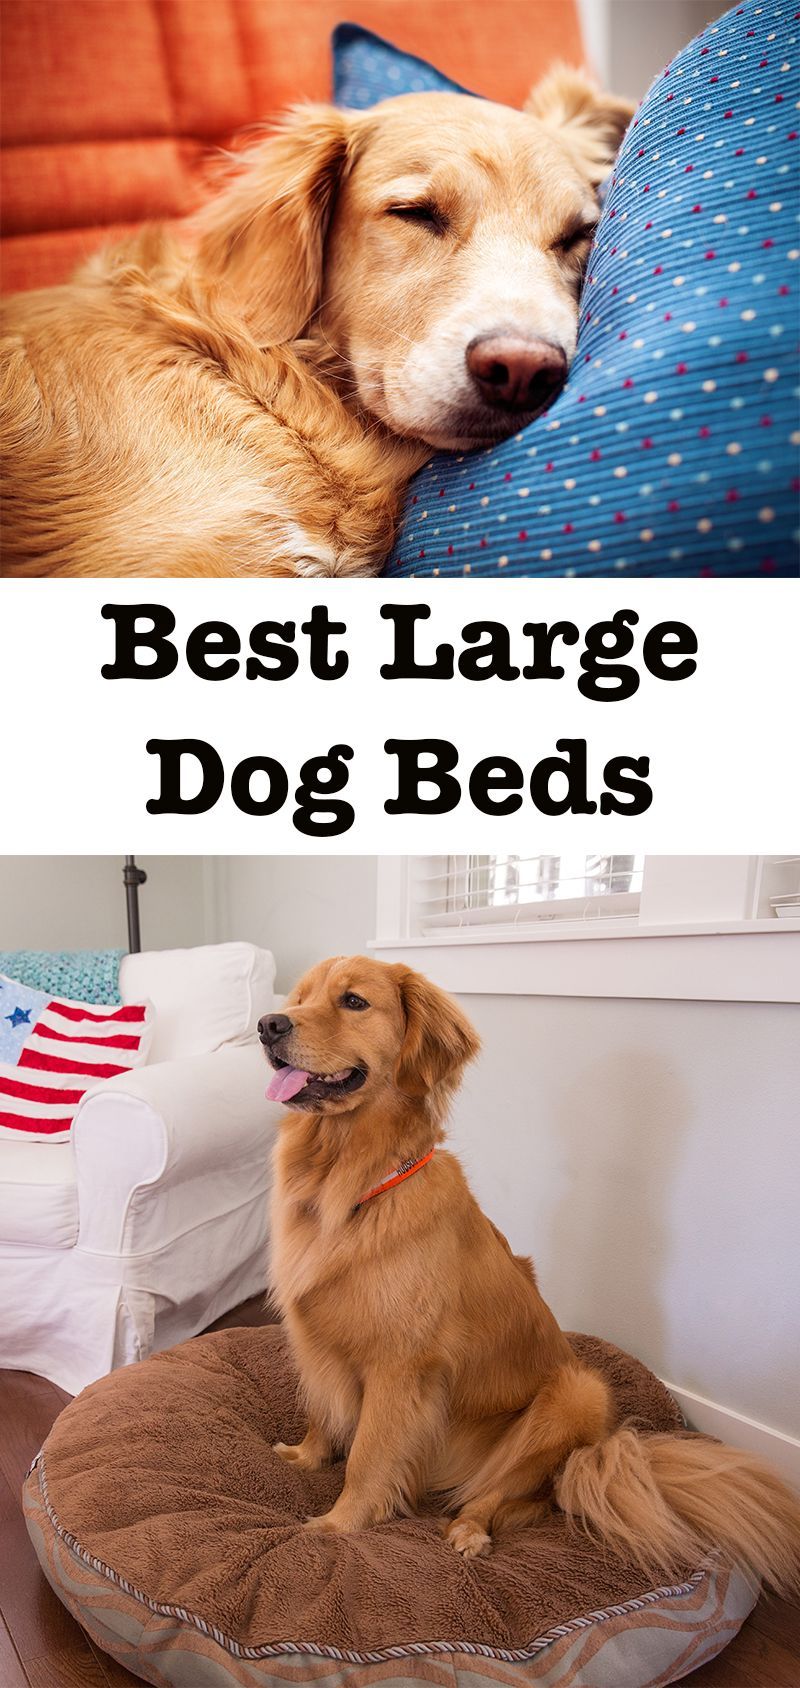 As melhores camas grandes para cães